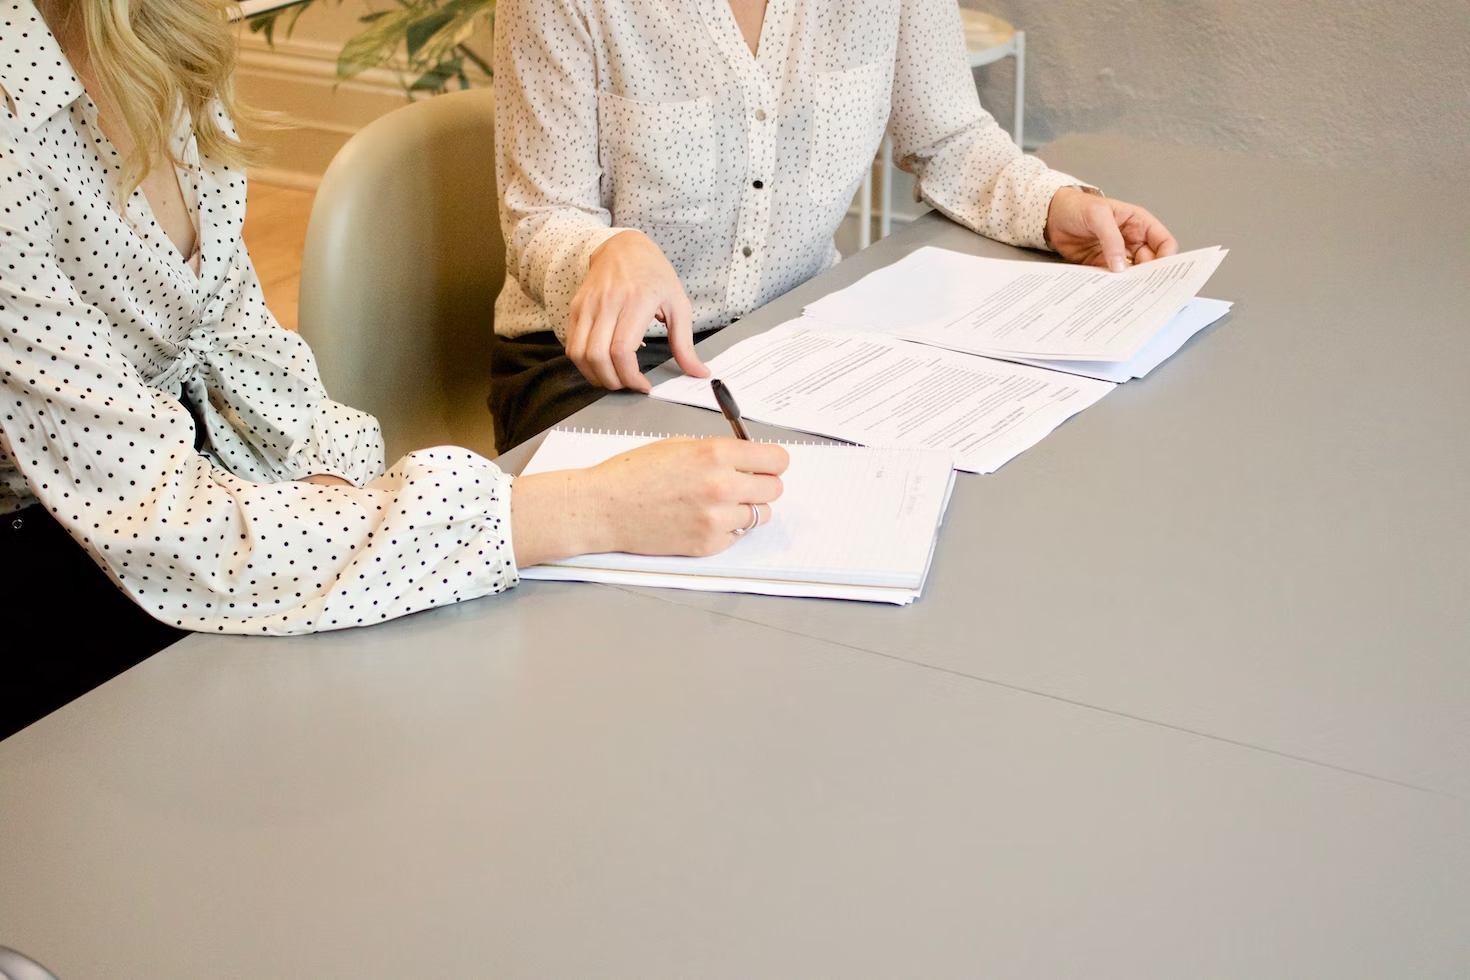 Deux femmes portant des chemises blanches et noires assises à une table et signant et regardant des documents